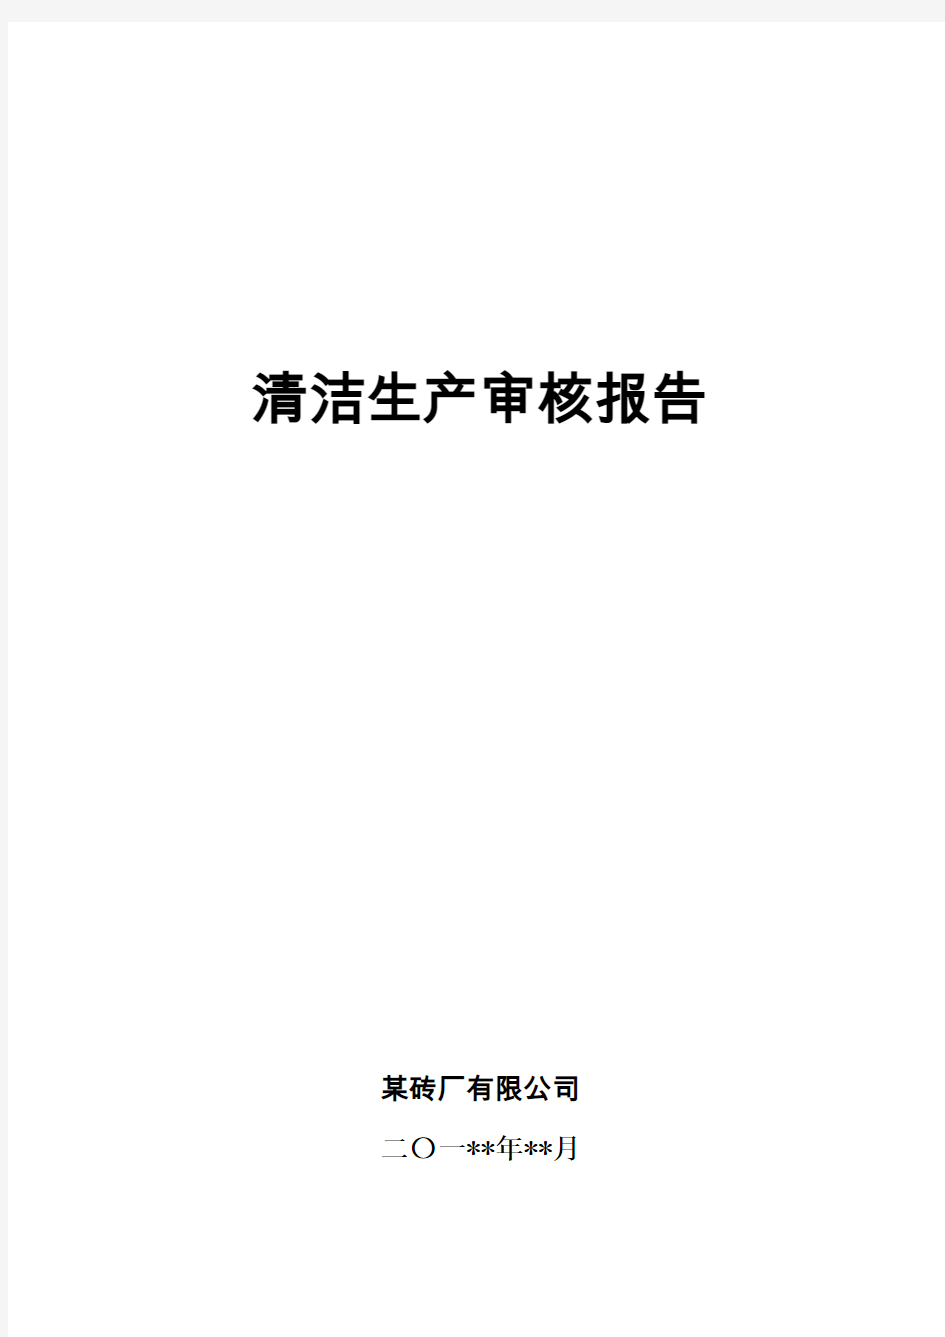 某砖厂清洁生产审核报告(2015年)